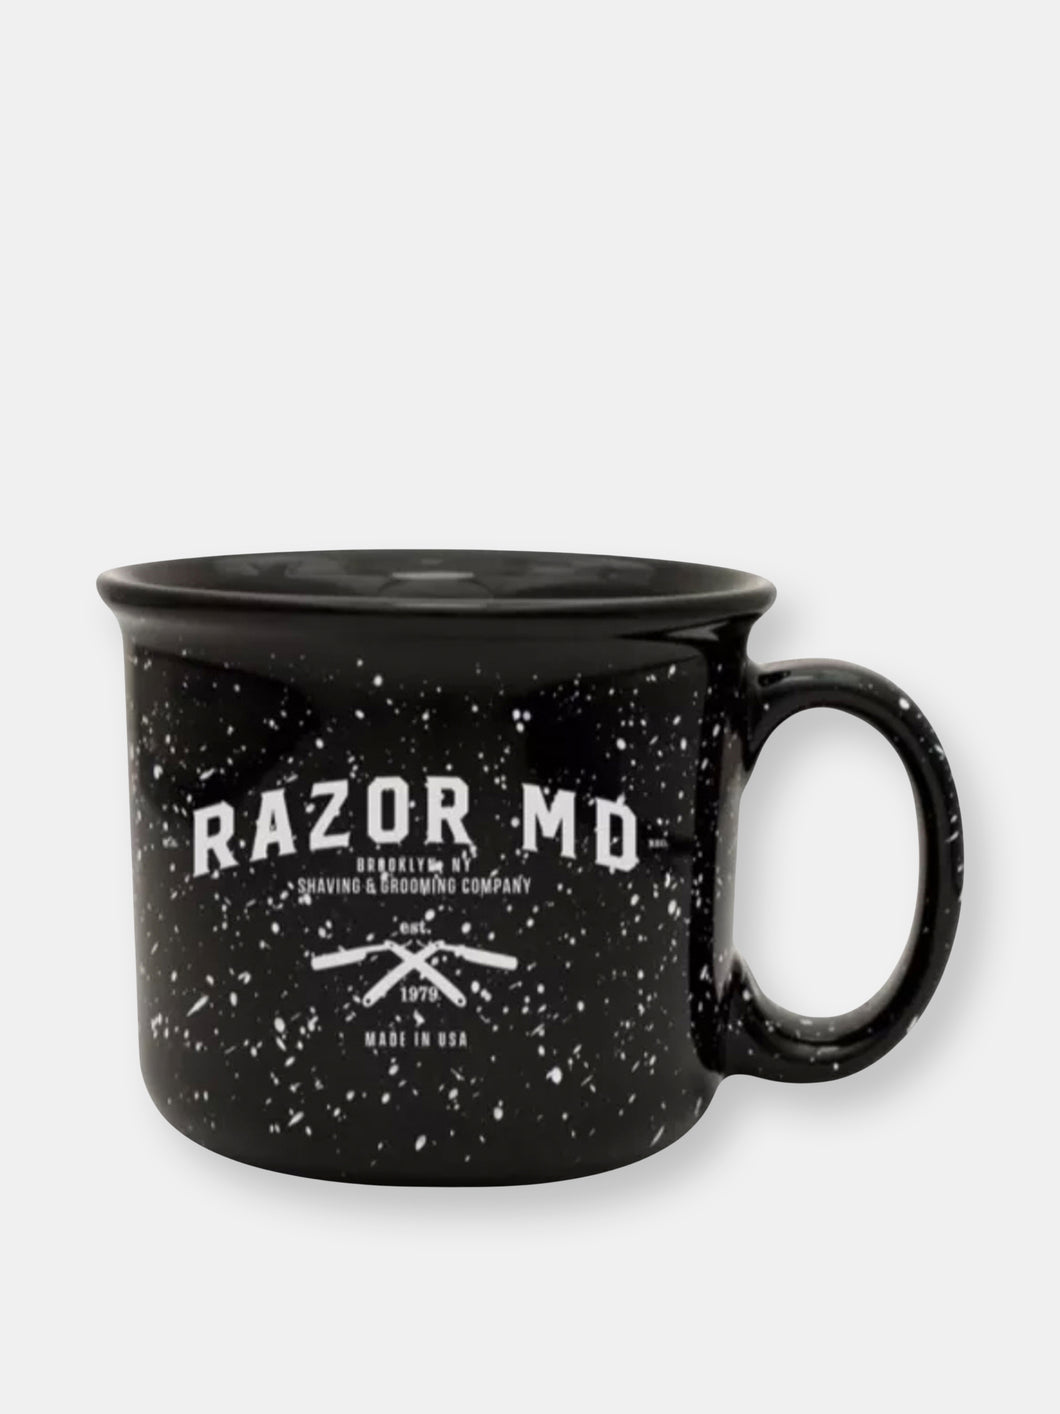 RAZOR MD signature mug